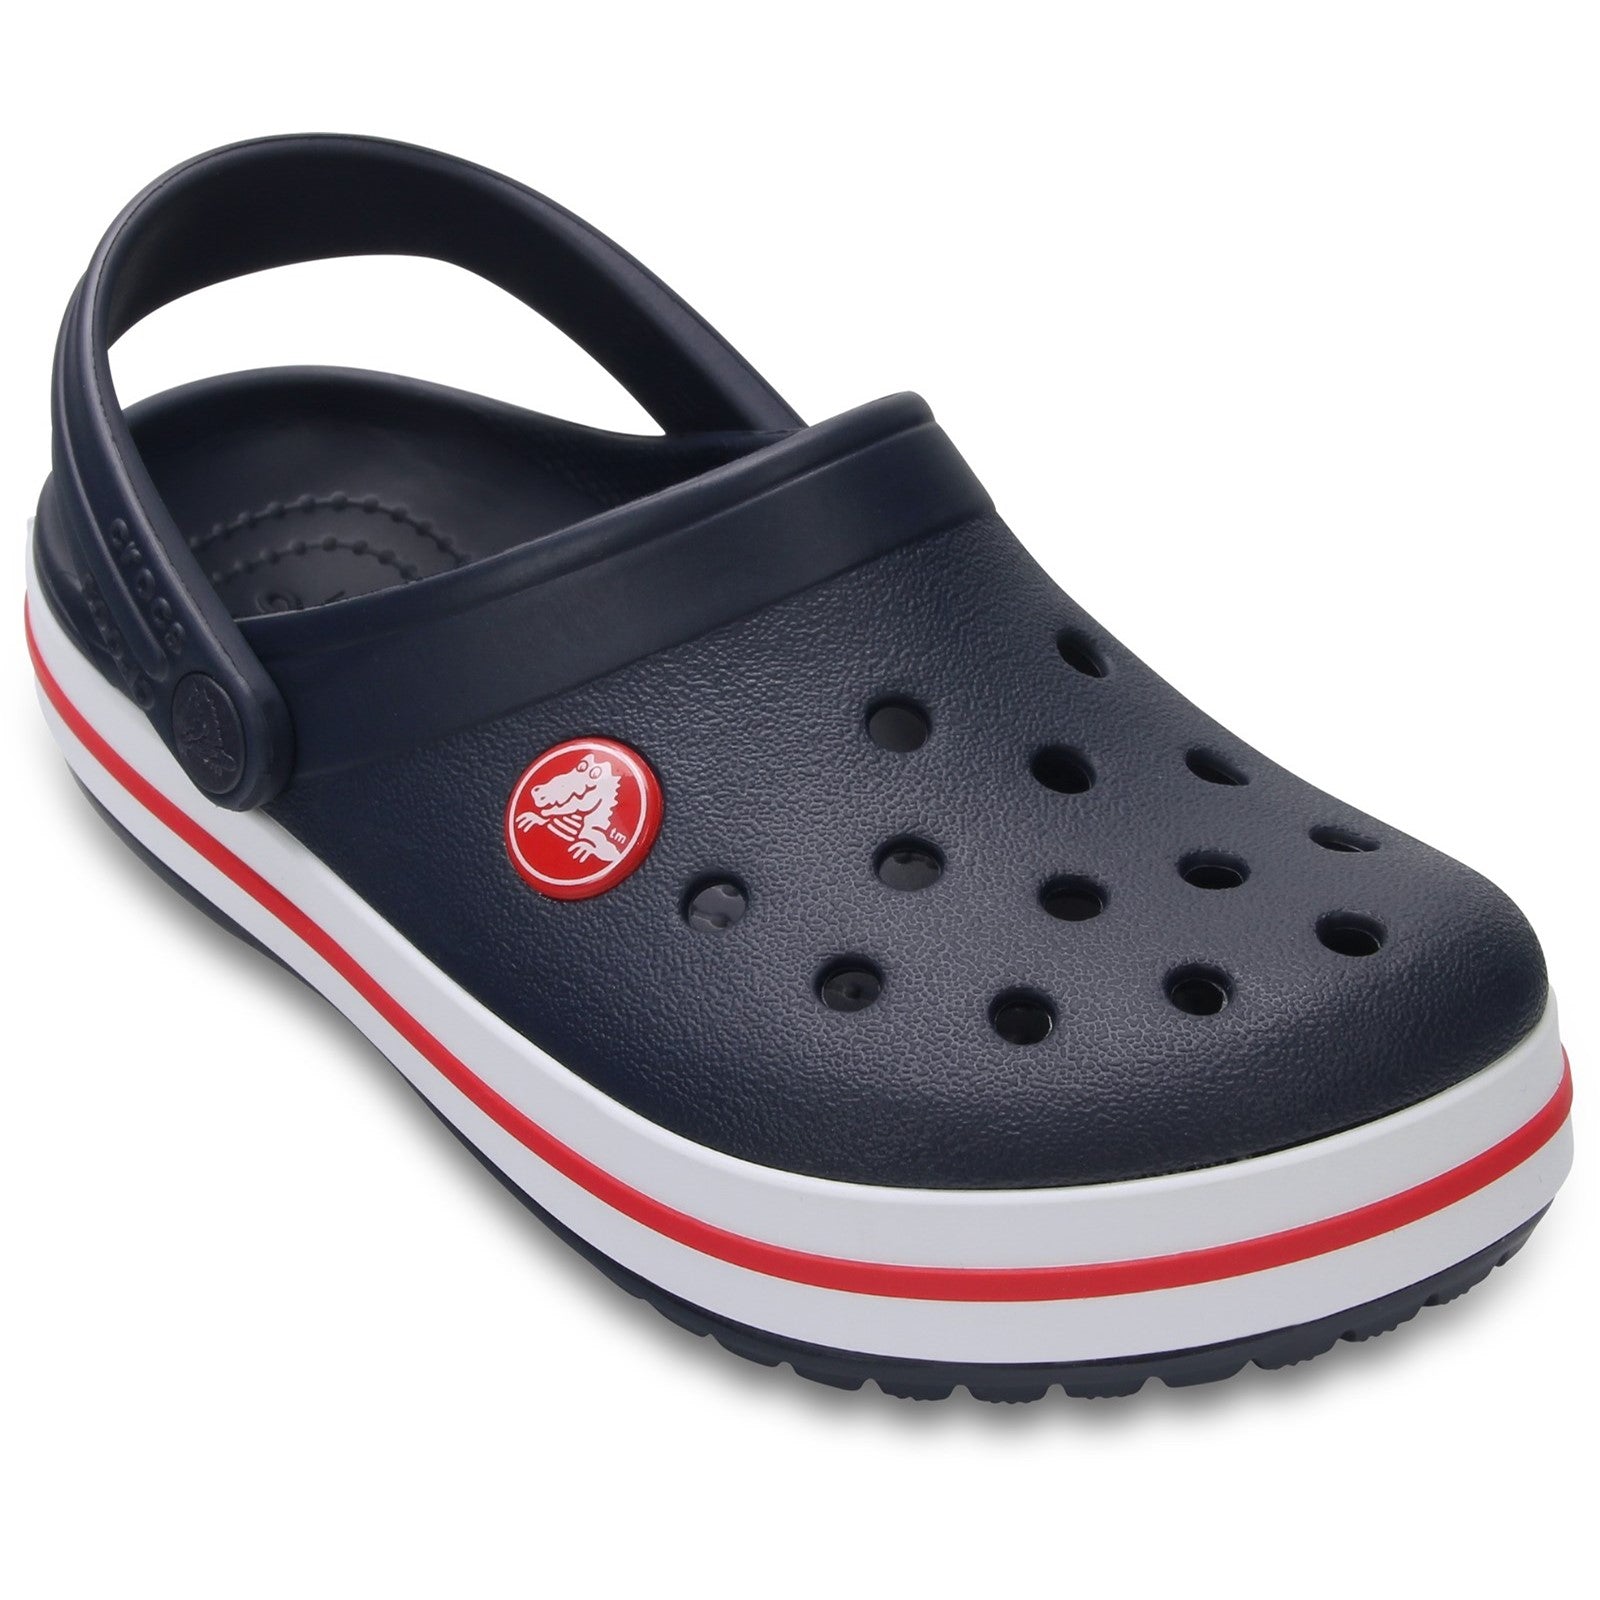 Crocs Crocband Clog Shoes